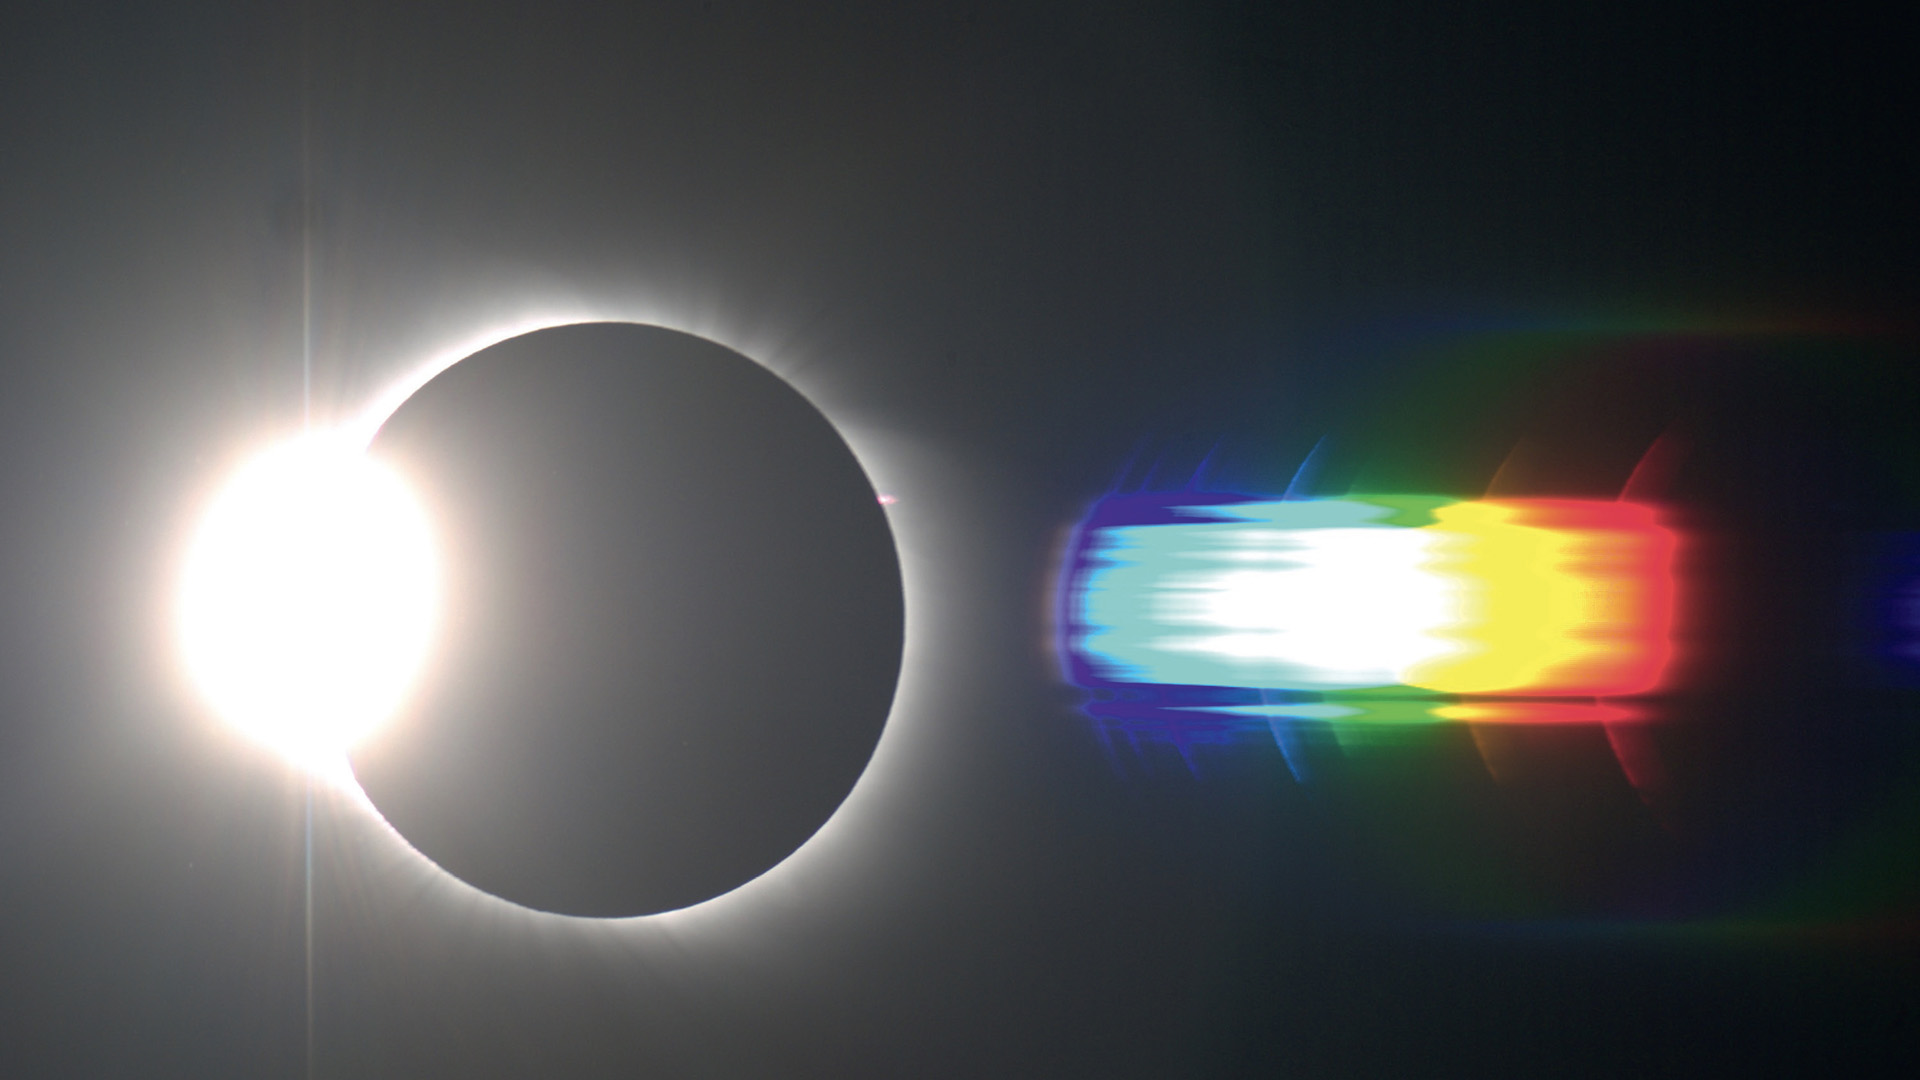 Le spectre éclair de l’éclipse solaire totale du 01/08/2008. Les raies d’émission les plus flagrantes sont identifiables et repérées. Bernd Gährken